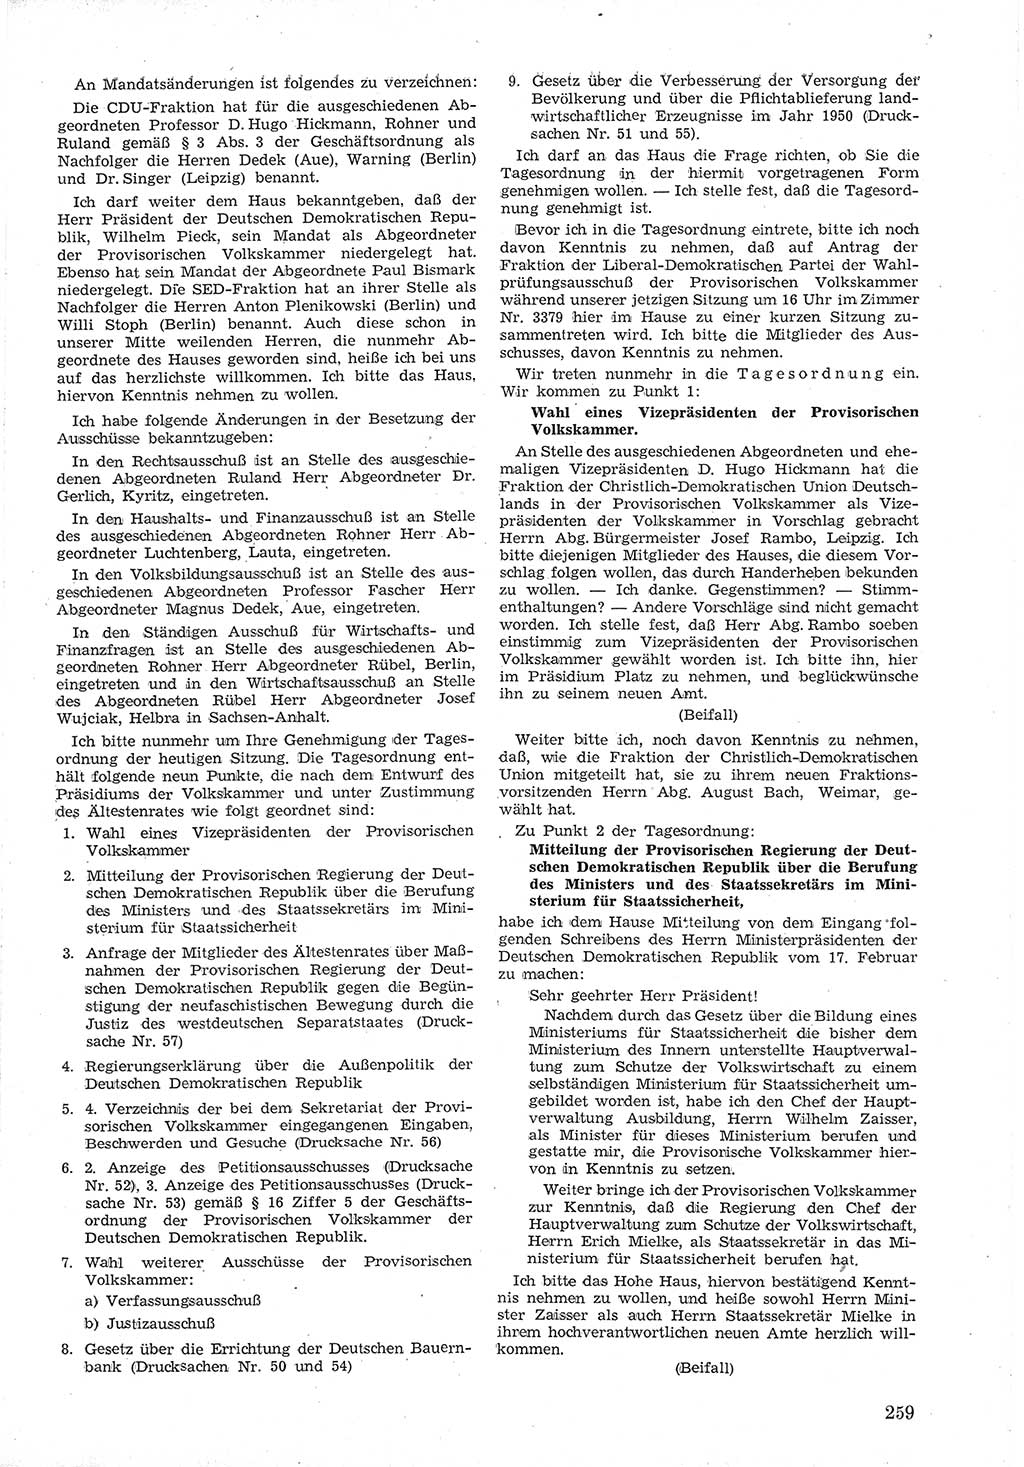 Provisorische Volkskammer (VK) der Deutschen Demokratischen Republik (DDR) 1949-1950, Dokument 273 (Prov. VK DDR 1949-1950, Dok. 273)